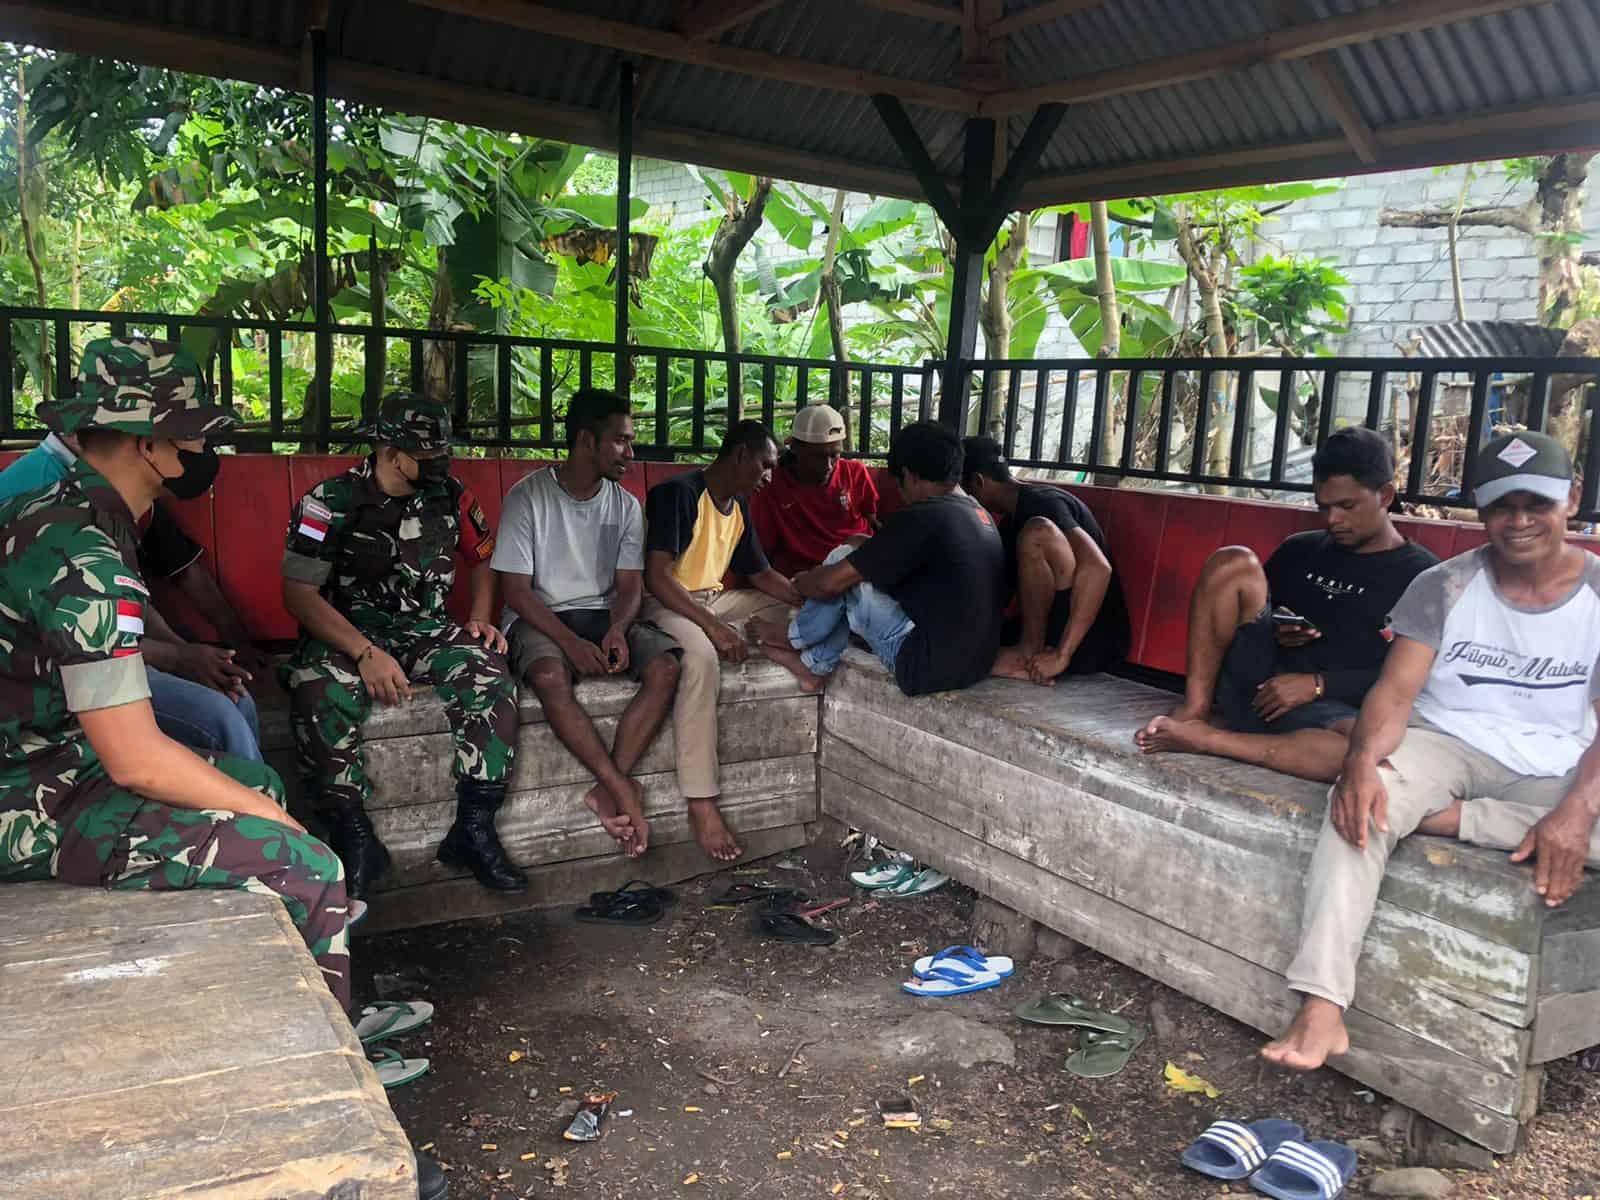 Pererat Komsos Dengan Masyarakat, Satgas Kodim Maluku Yonarhanud 11/WBY, Anjangsana ke Rumah Warga